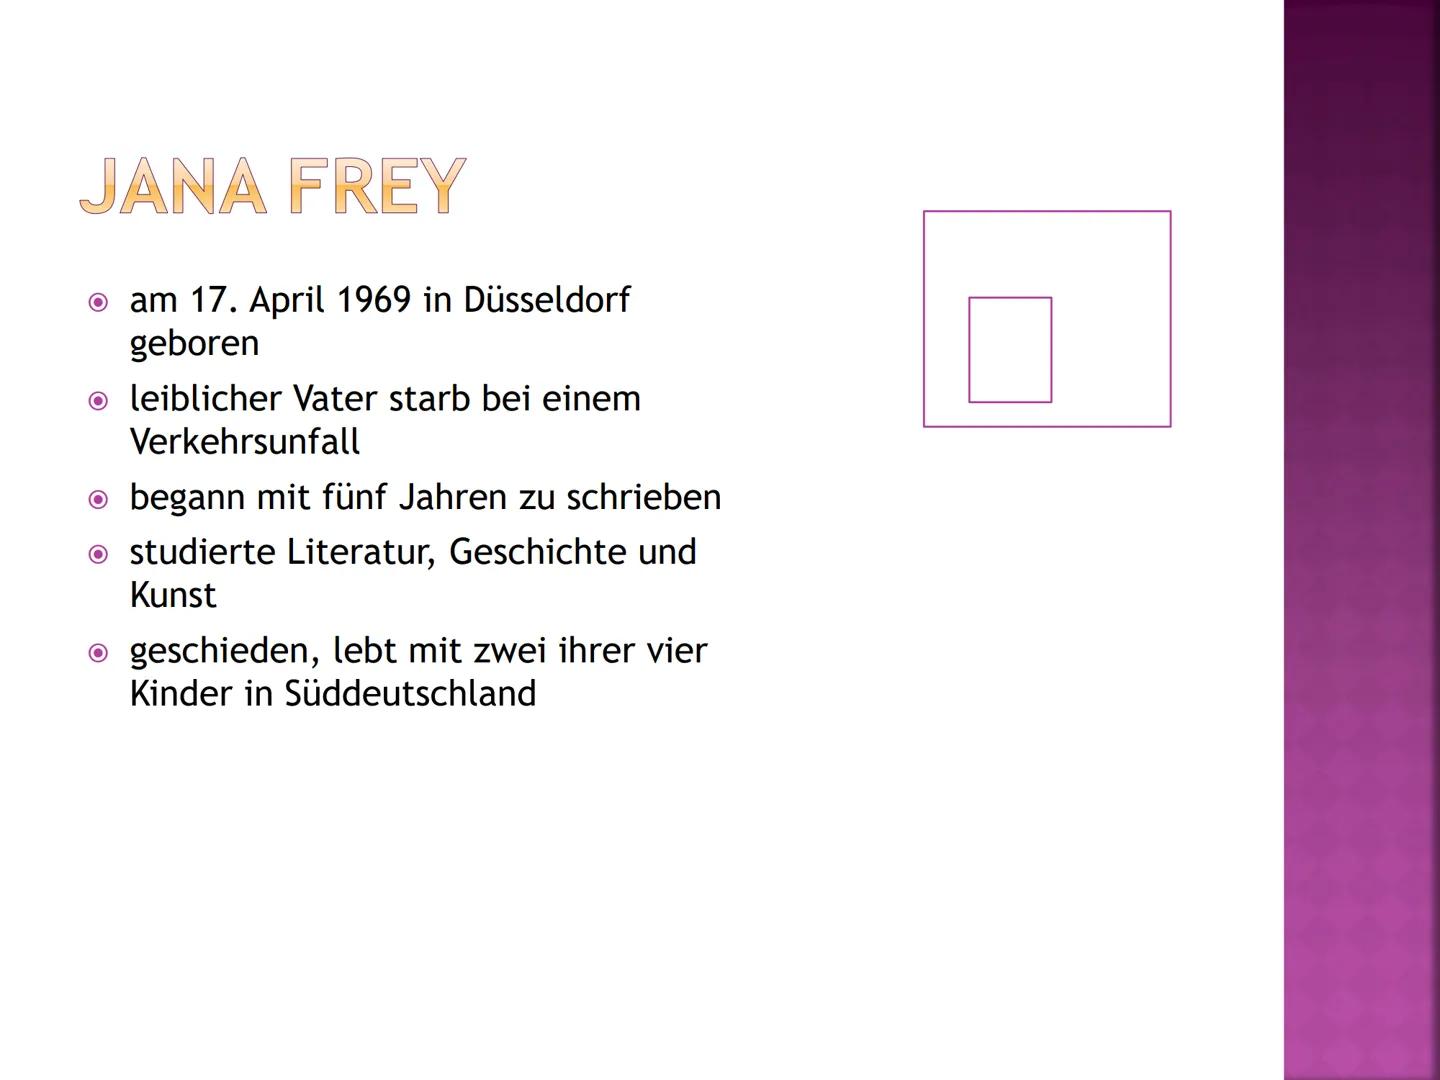 HÖHENFLUG
ABWERTS
MARIE NIMMT DROGEN
Von Jana Frey Handout zum Buch:
●
Jana Frey Lebenslauf:
● kam am 17. April 1969 in Düsseldorf zur Welt 